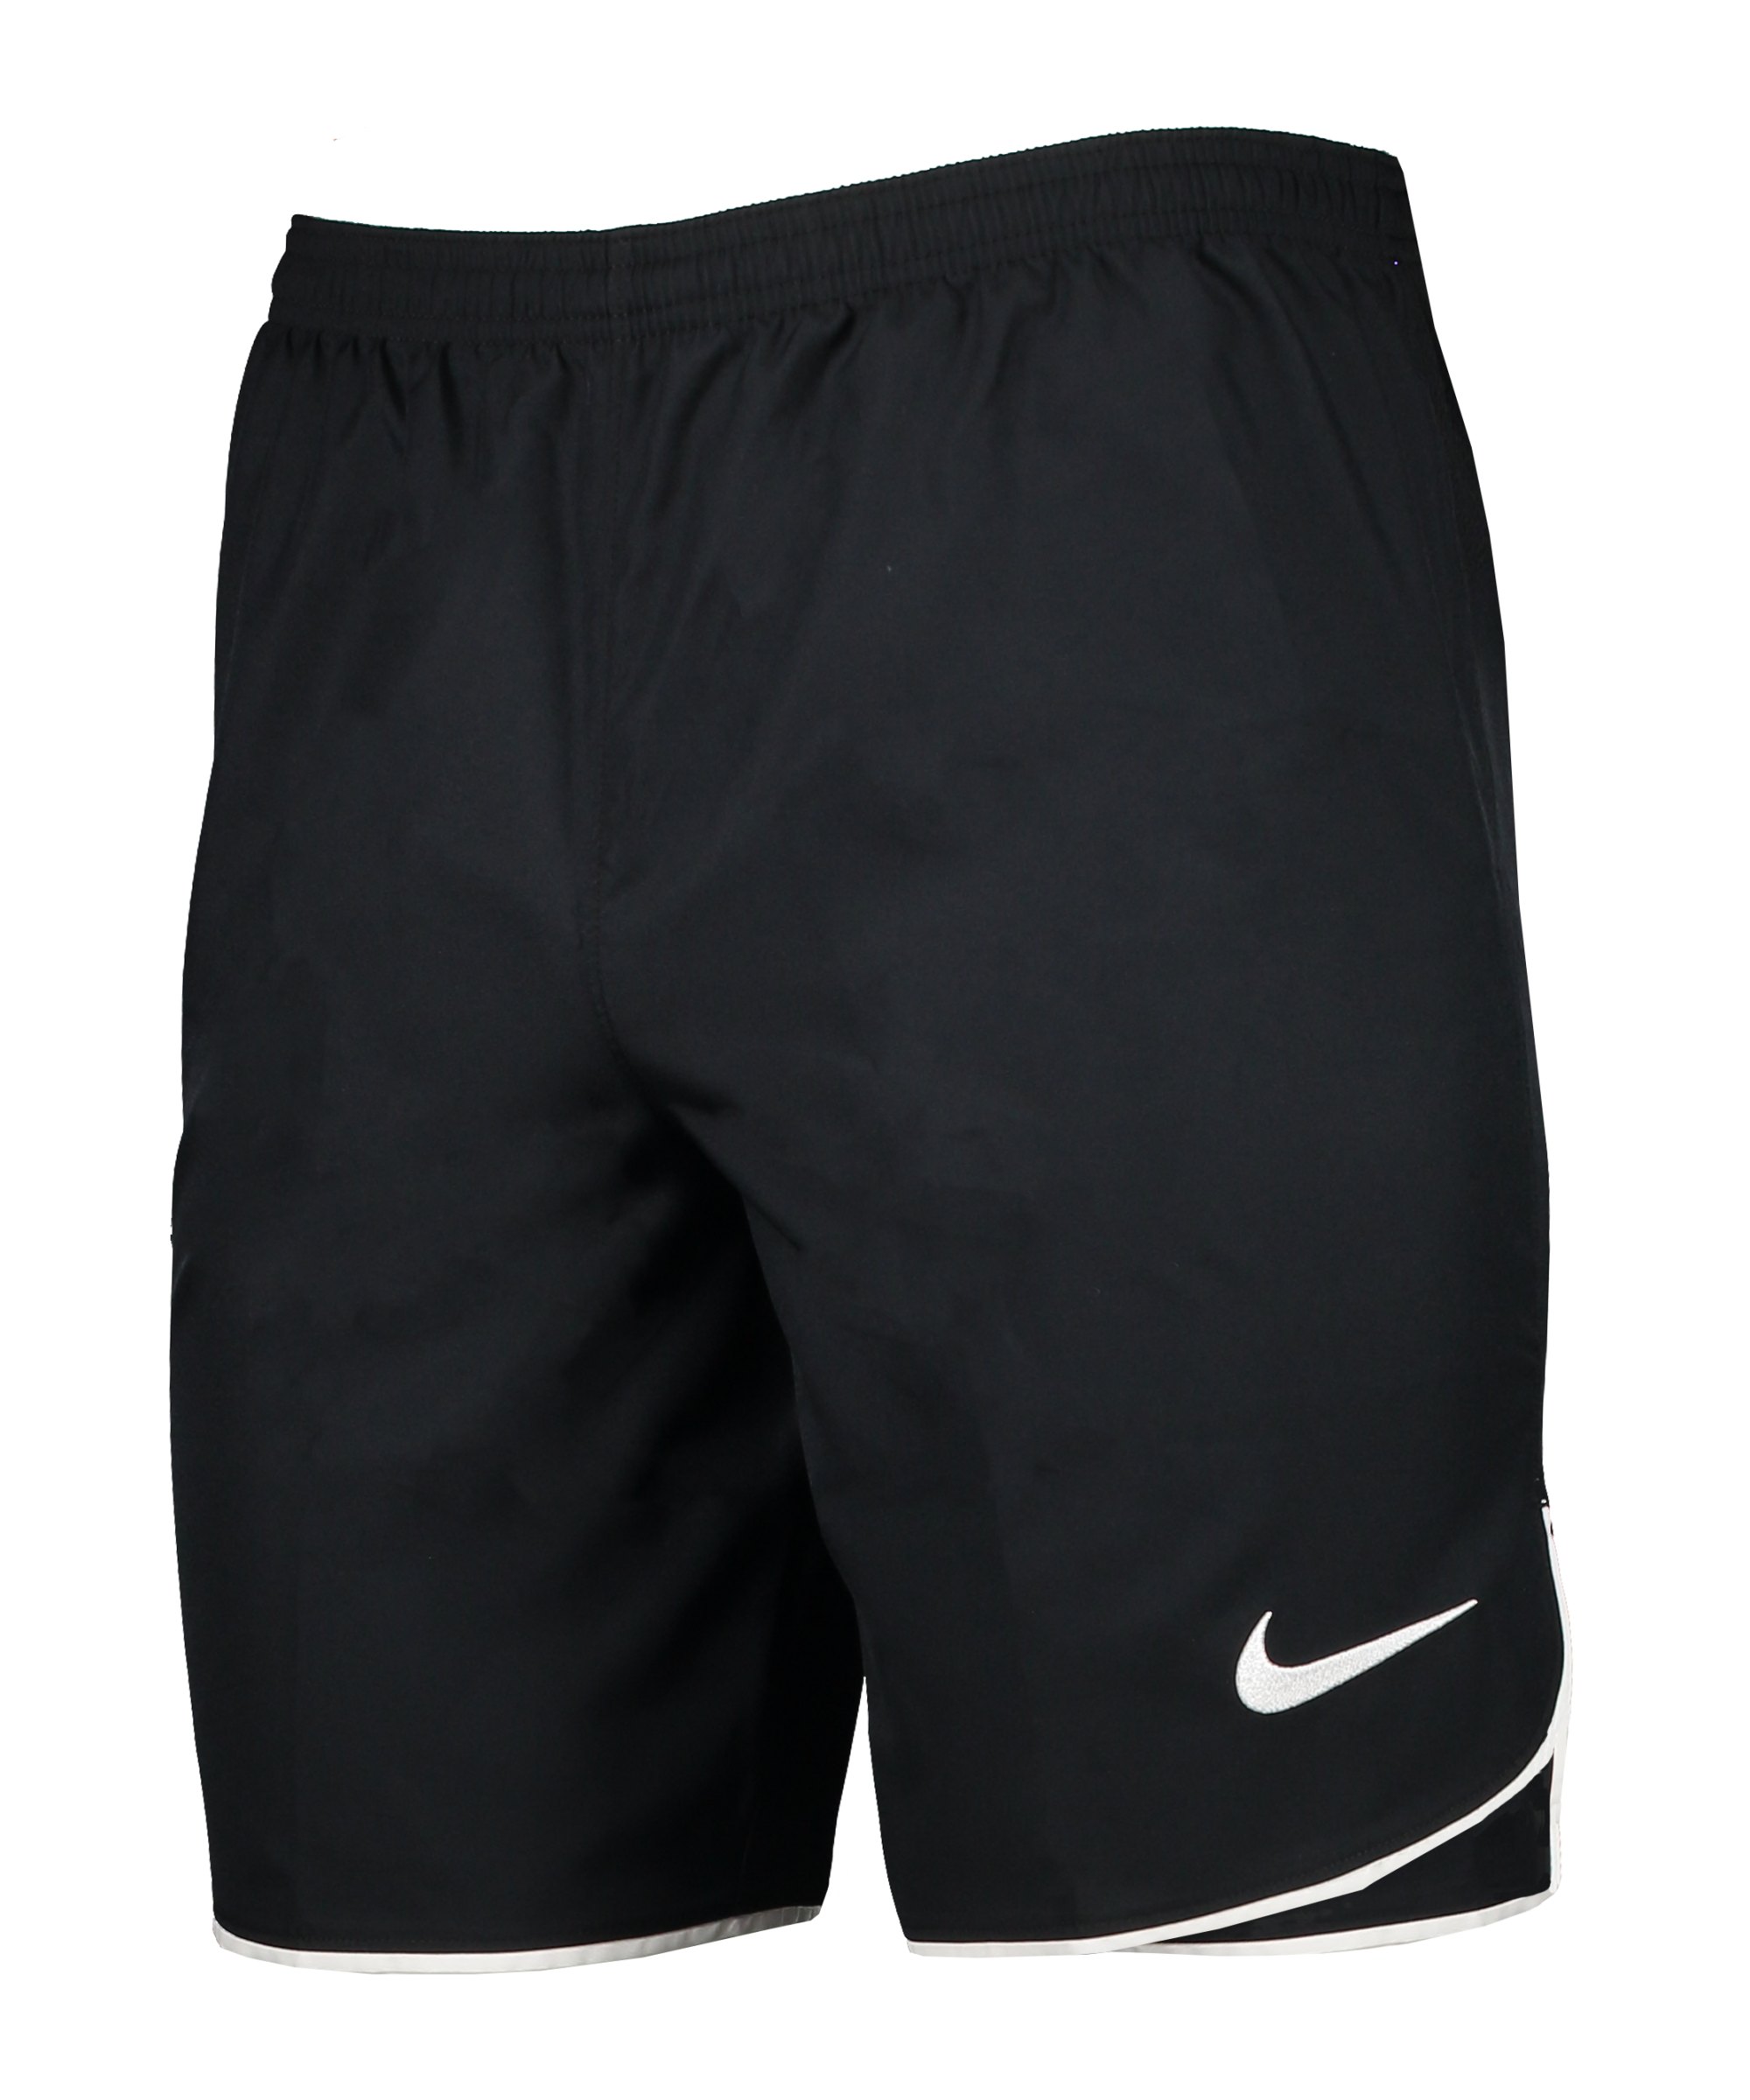 Nike Laser V Woven Short Schwarz Weiss F010 - schwarz